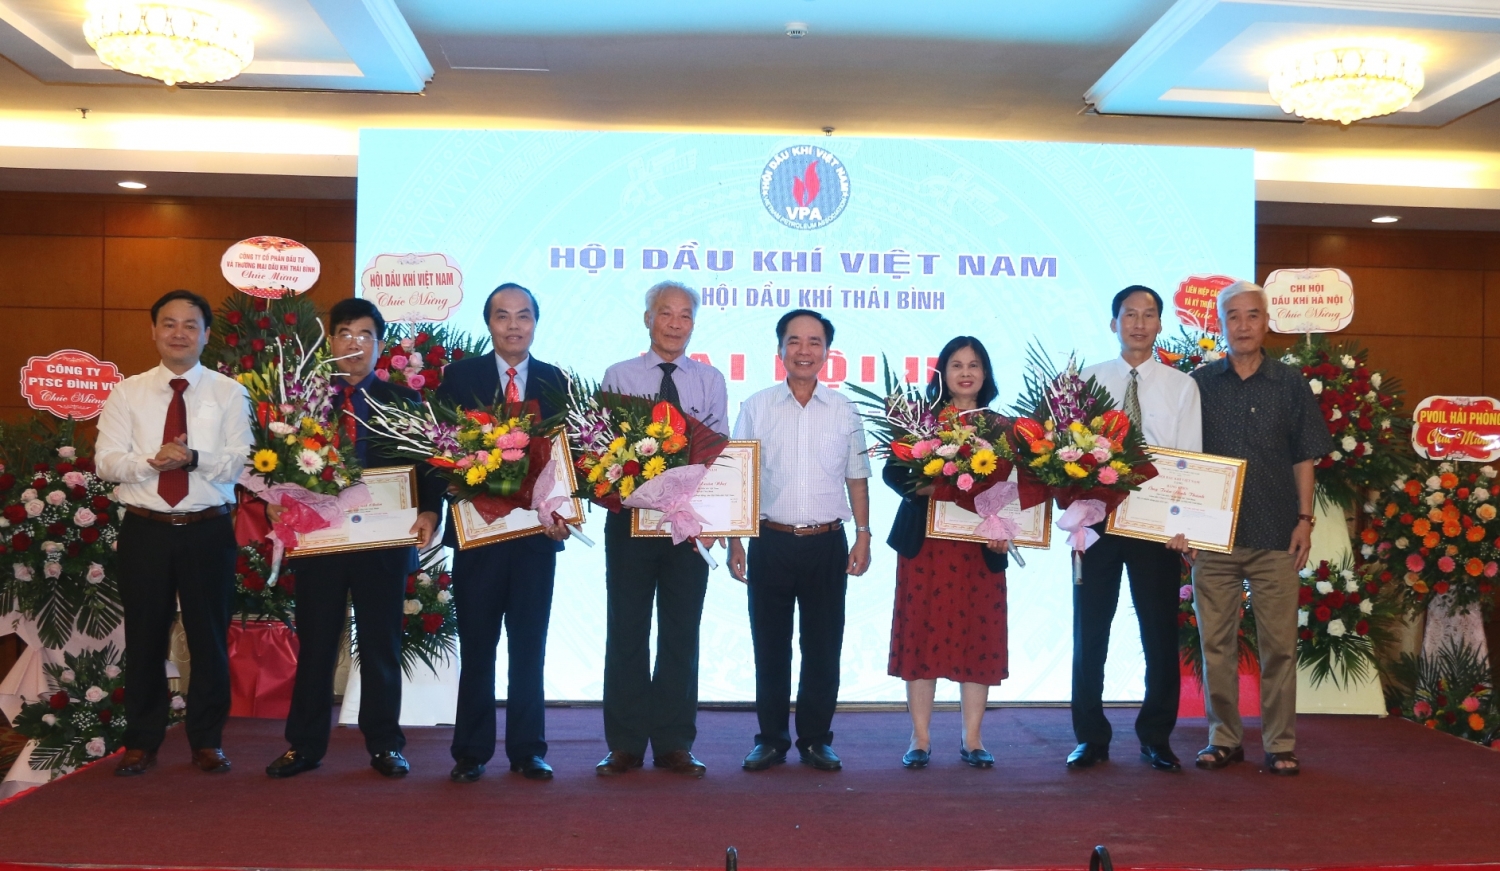 Chi hội Dầu khí Thái Bình tổ chức Đại hội lần thứ III, nhiệm kỳ 2022 - 2025